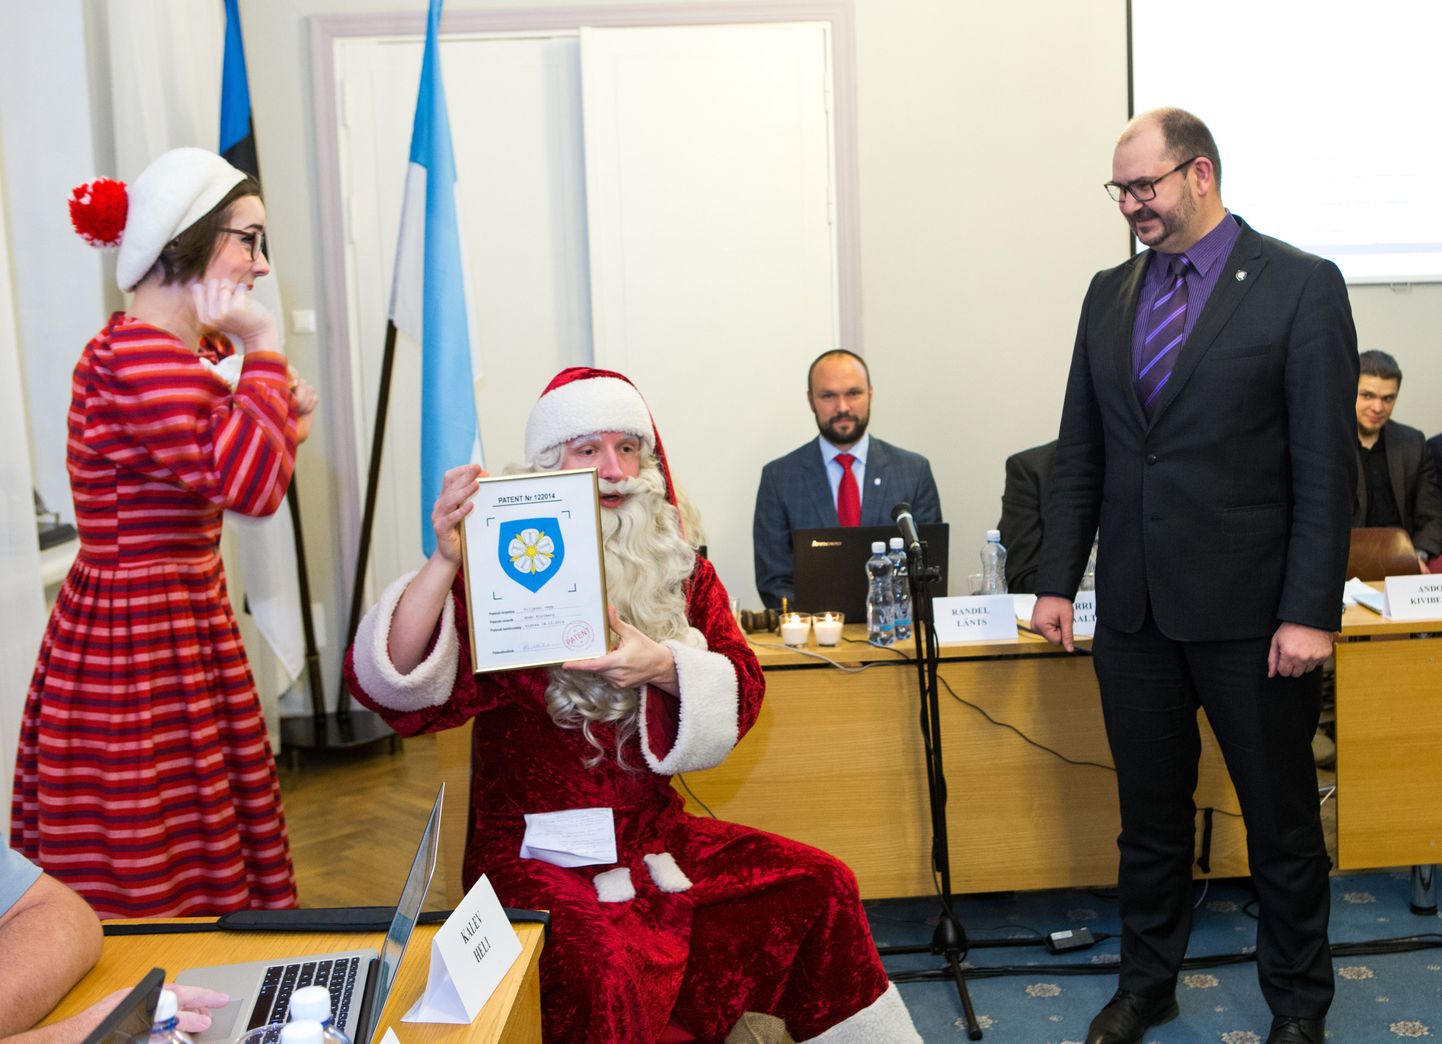 Pärast prantsuse keeles laulu esitamist sai linnapea Ando Kiviberg jõuluvanalt linna vapi koos patendiga.